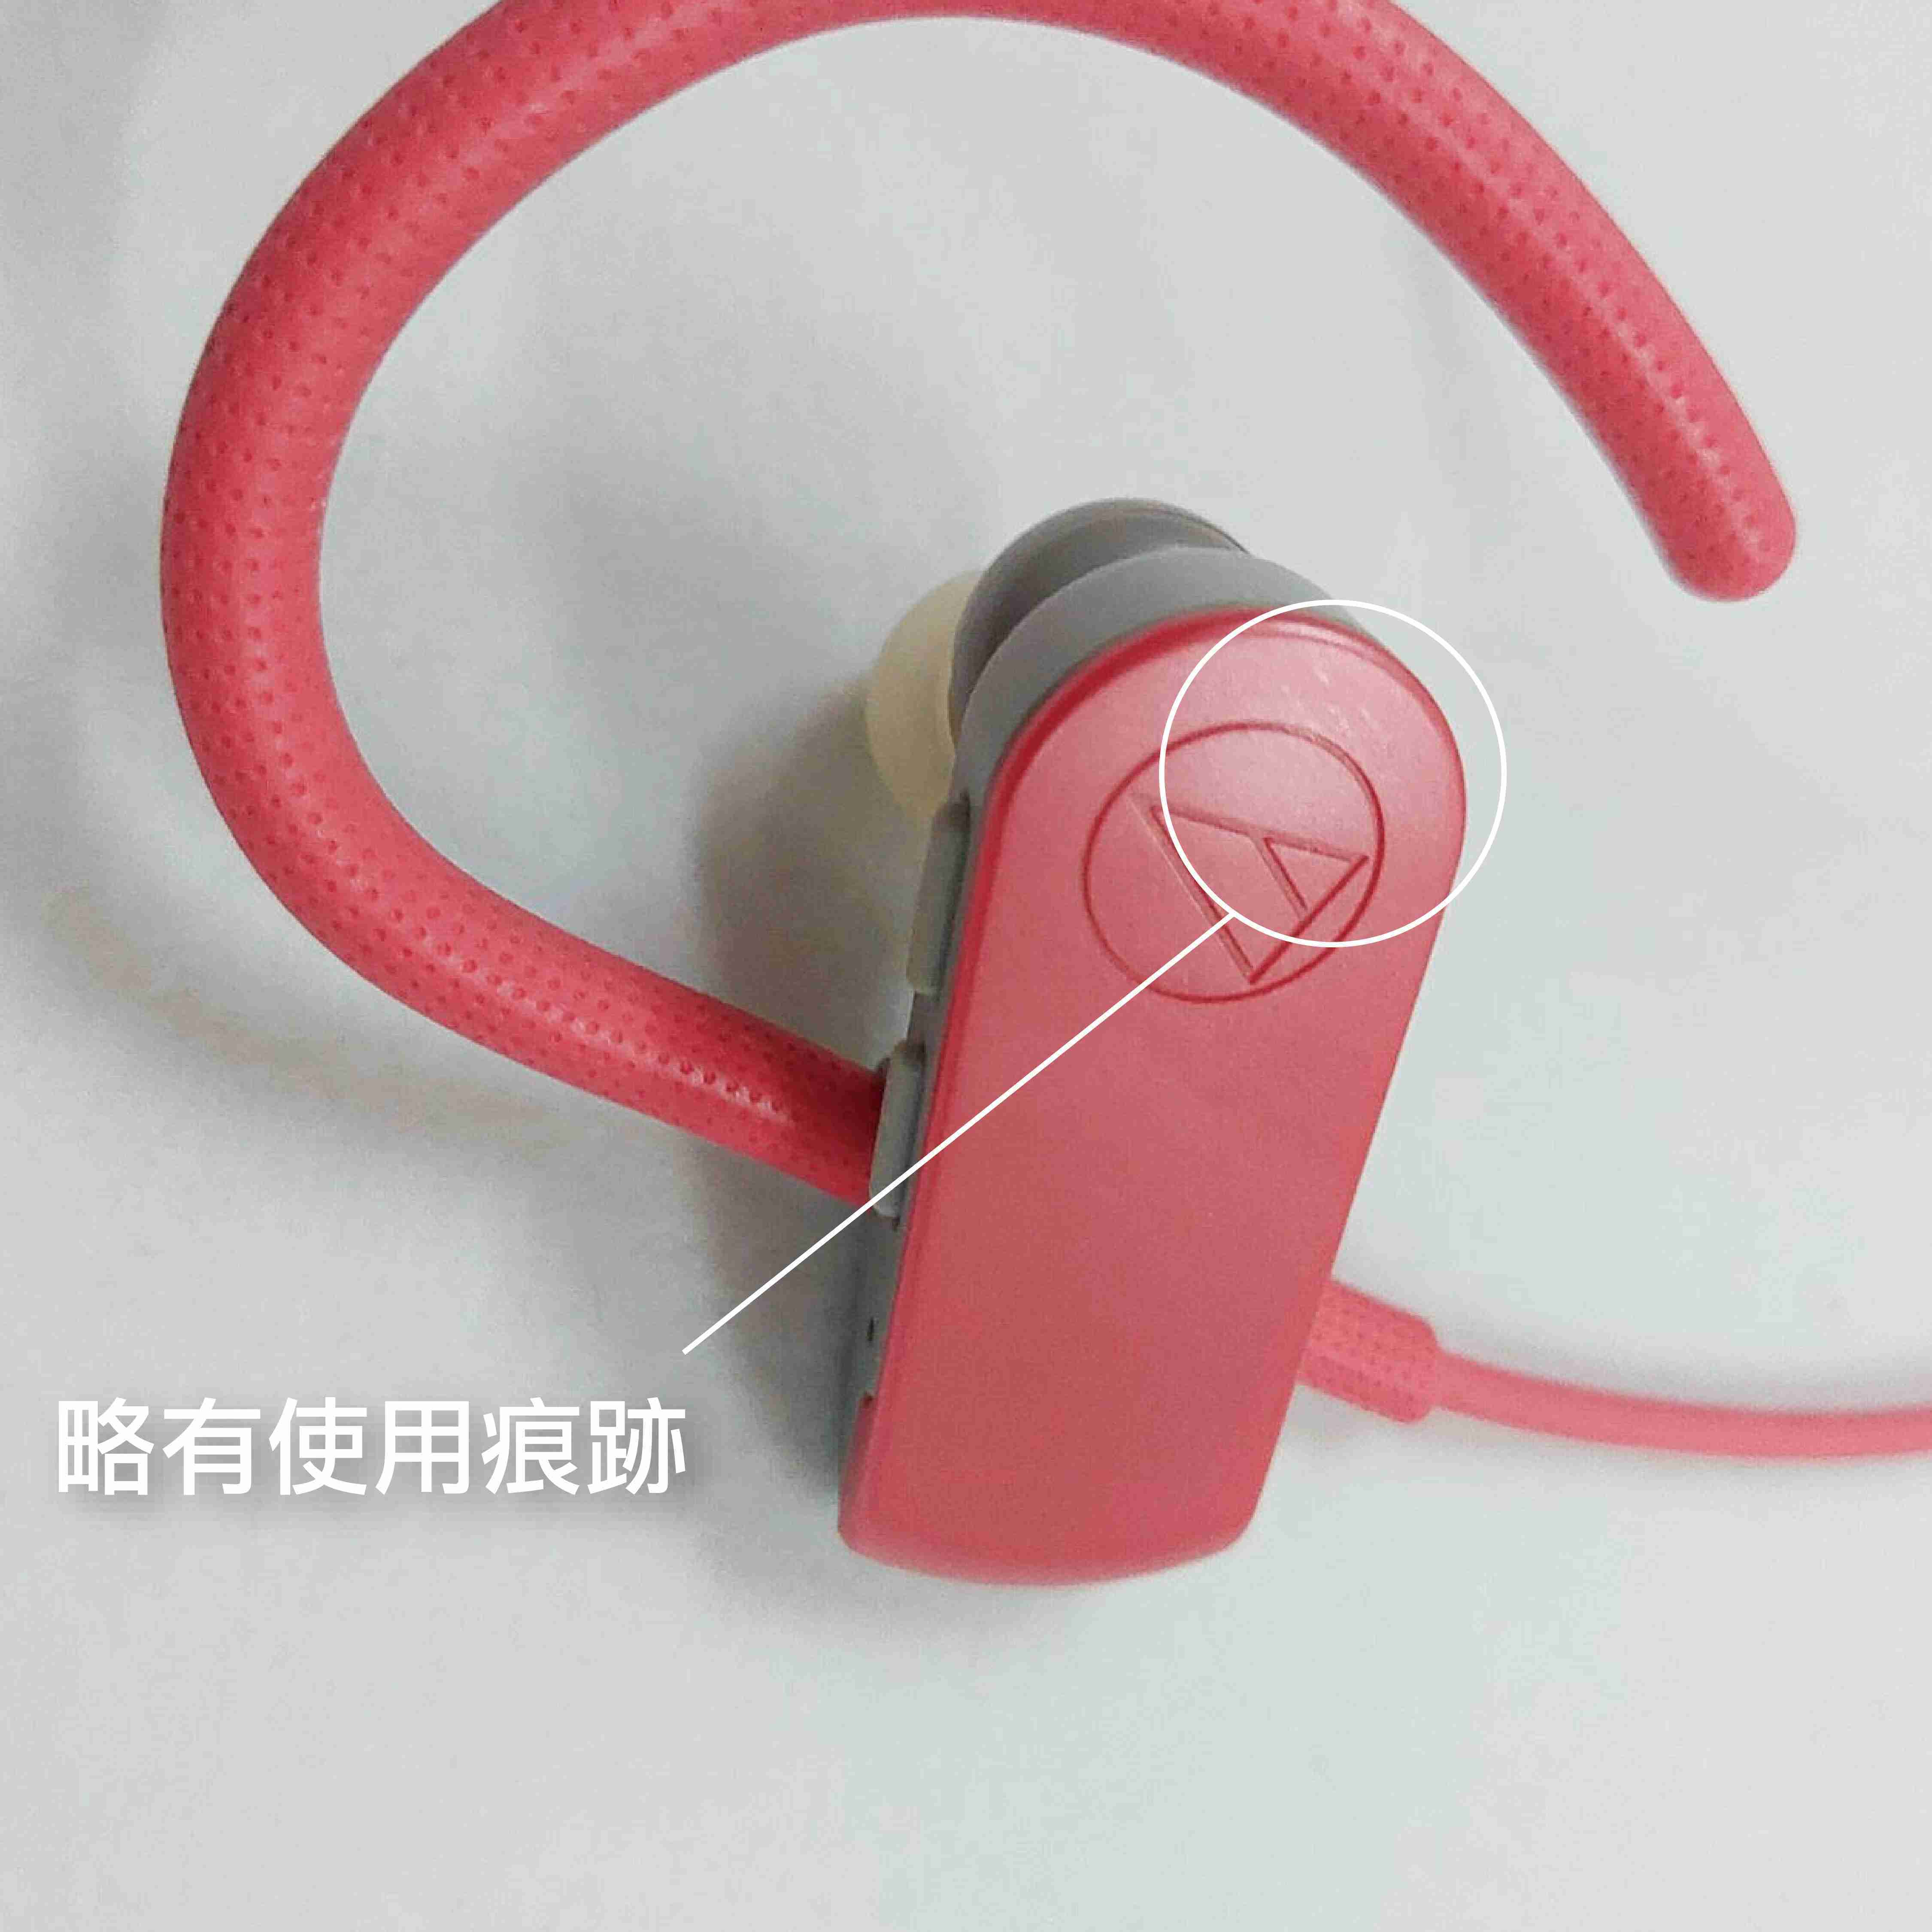 【福利機A組】鐵三角 ATH-SPORT50BT 粉色 無線 藍芽 運動耳機 防水 | 金曲音響